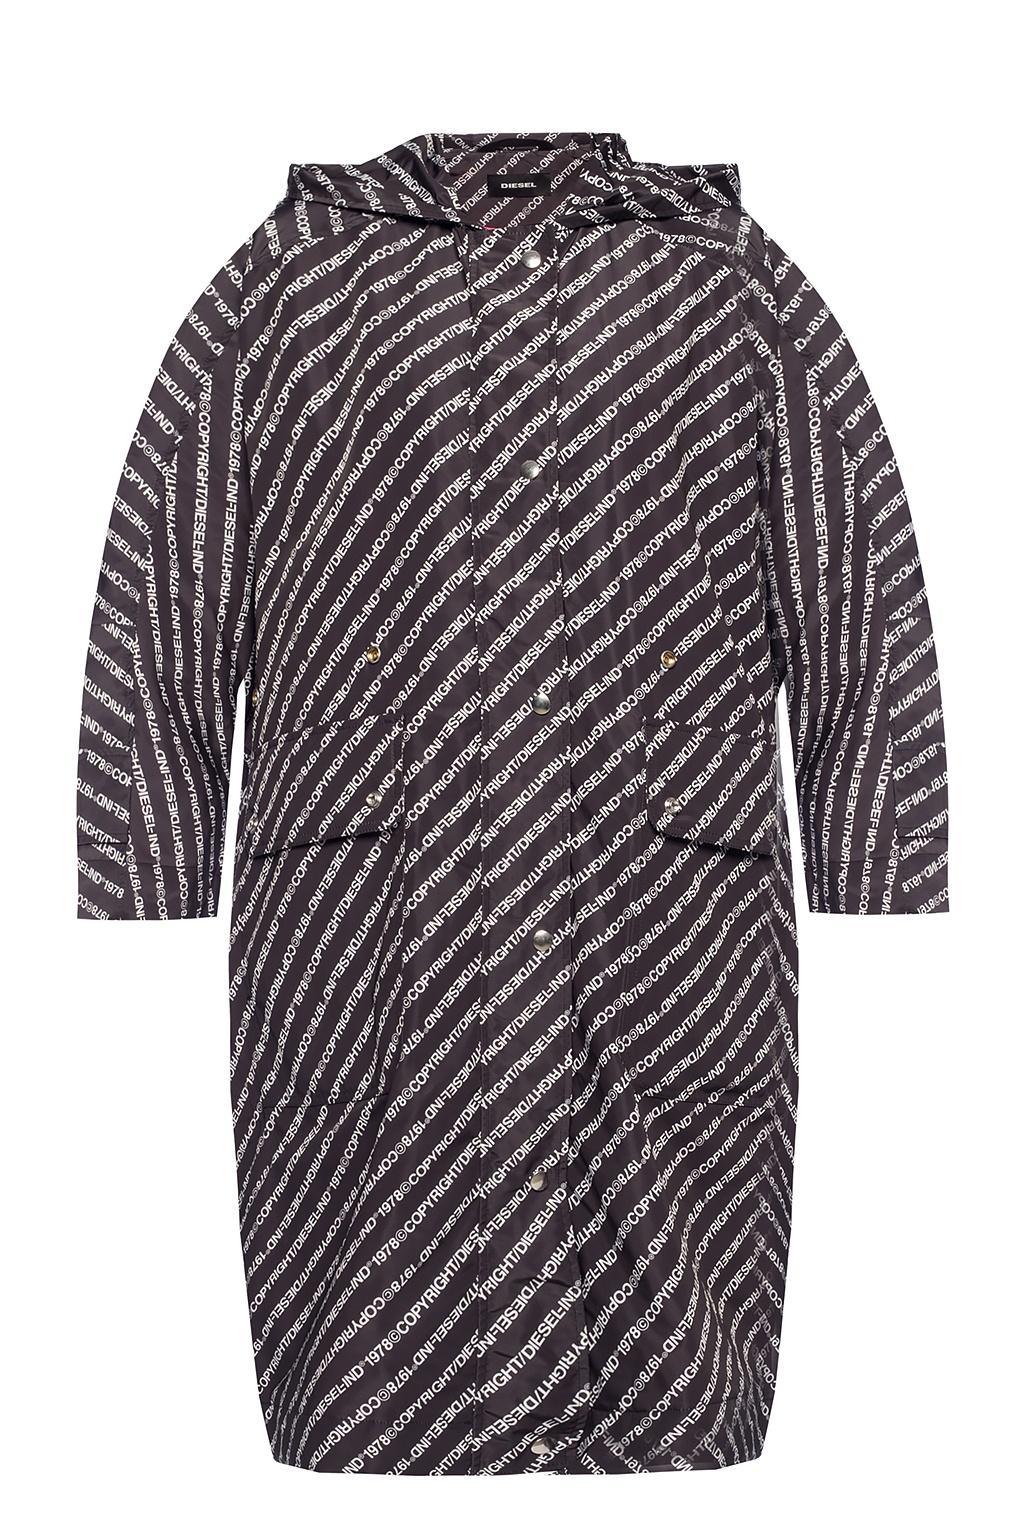 DIESEL graphic-print Padded Jacket - Grey